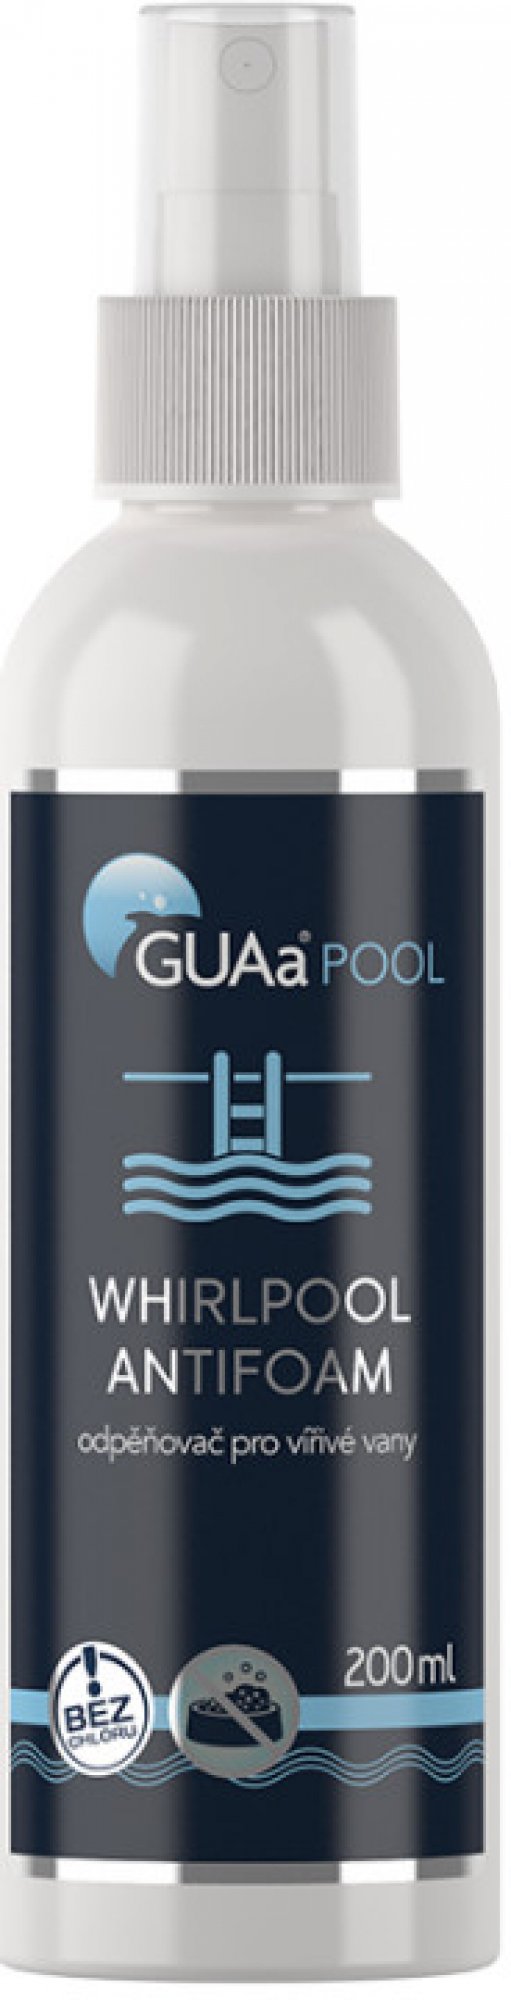 GUAA Whirlpool Antifoam 200ml - odpěňovač vířivých van a bazénů